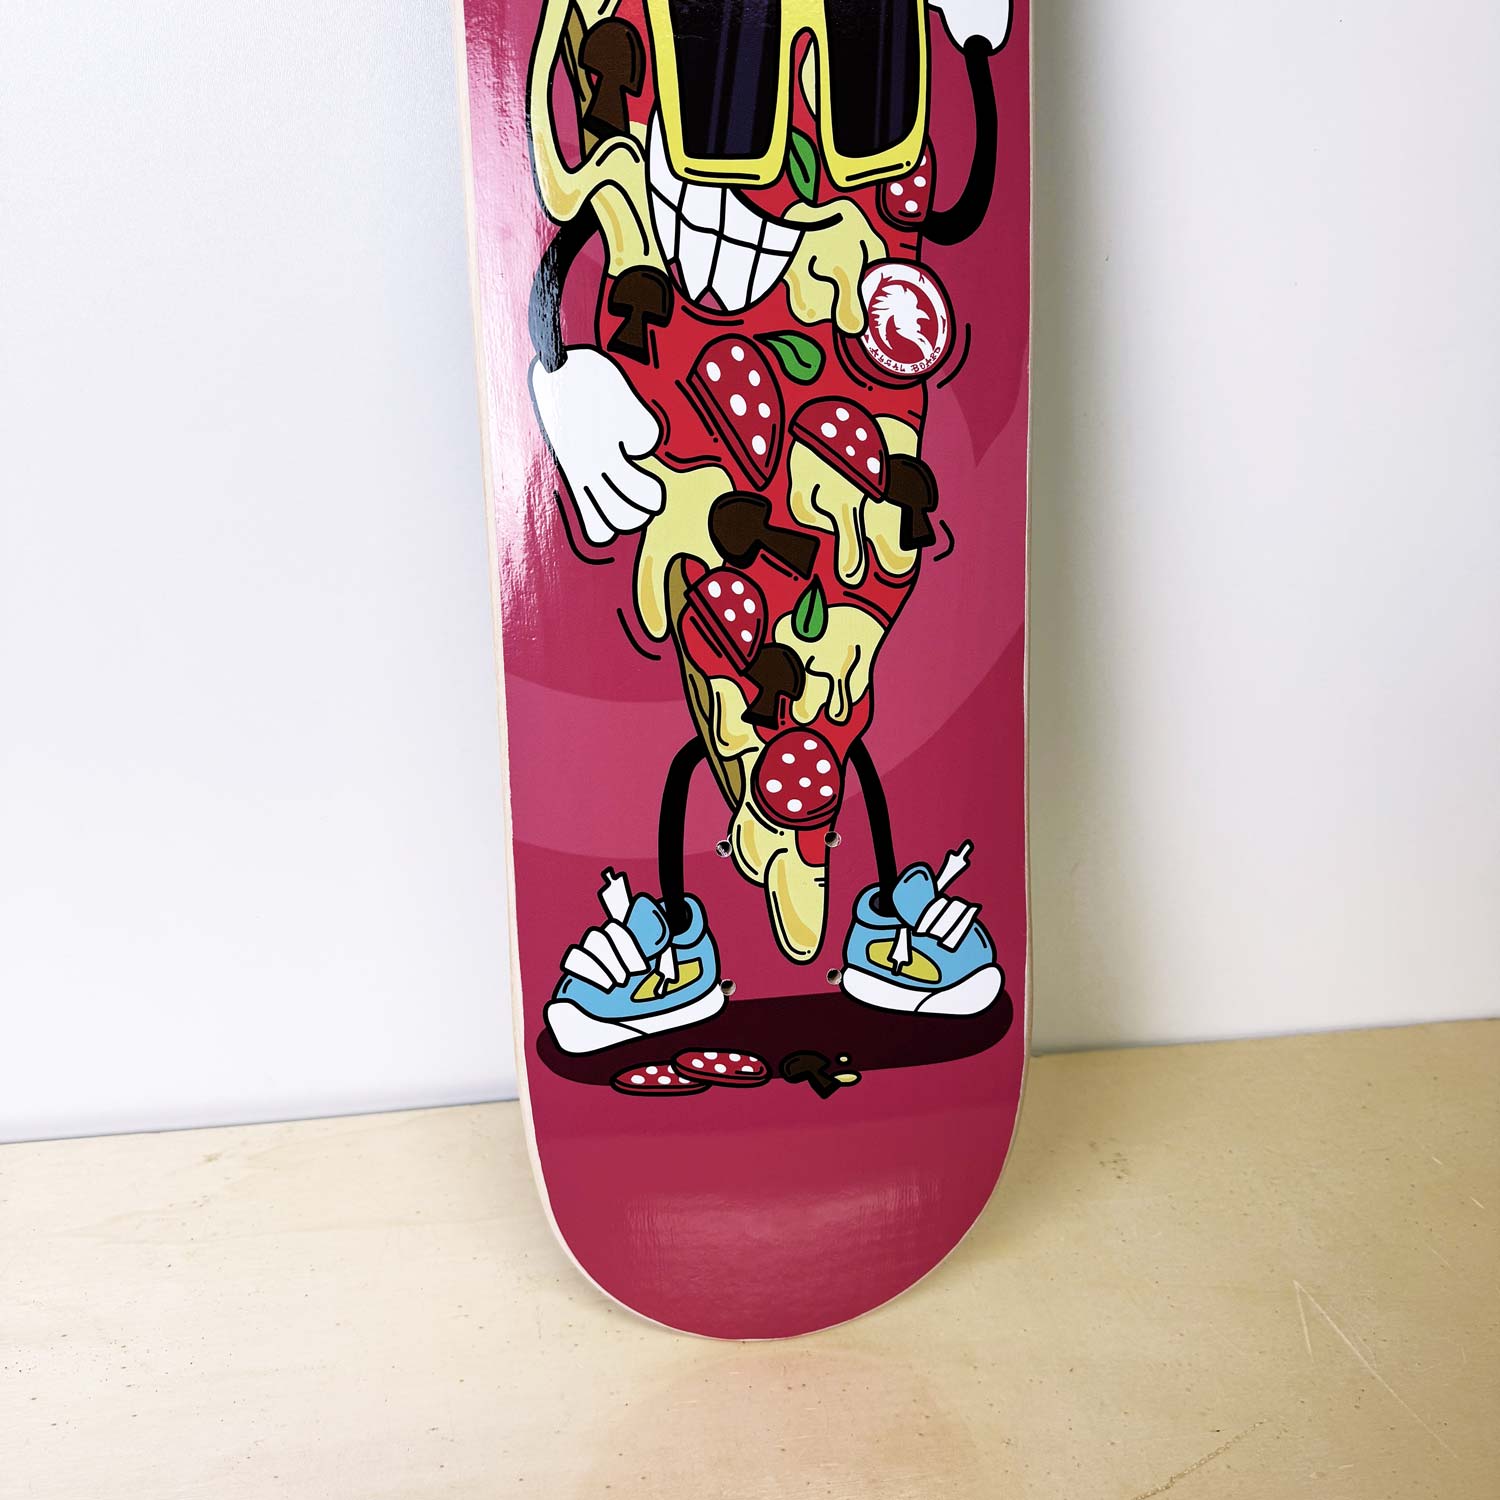 tavola skateboard con grafica di una pizza - disegnato e prodotto da algal board